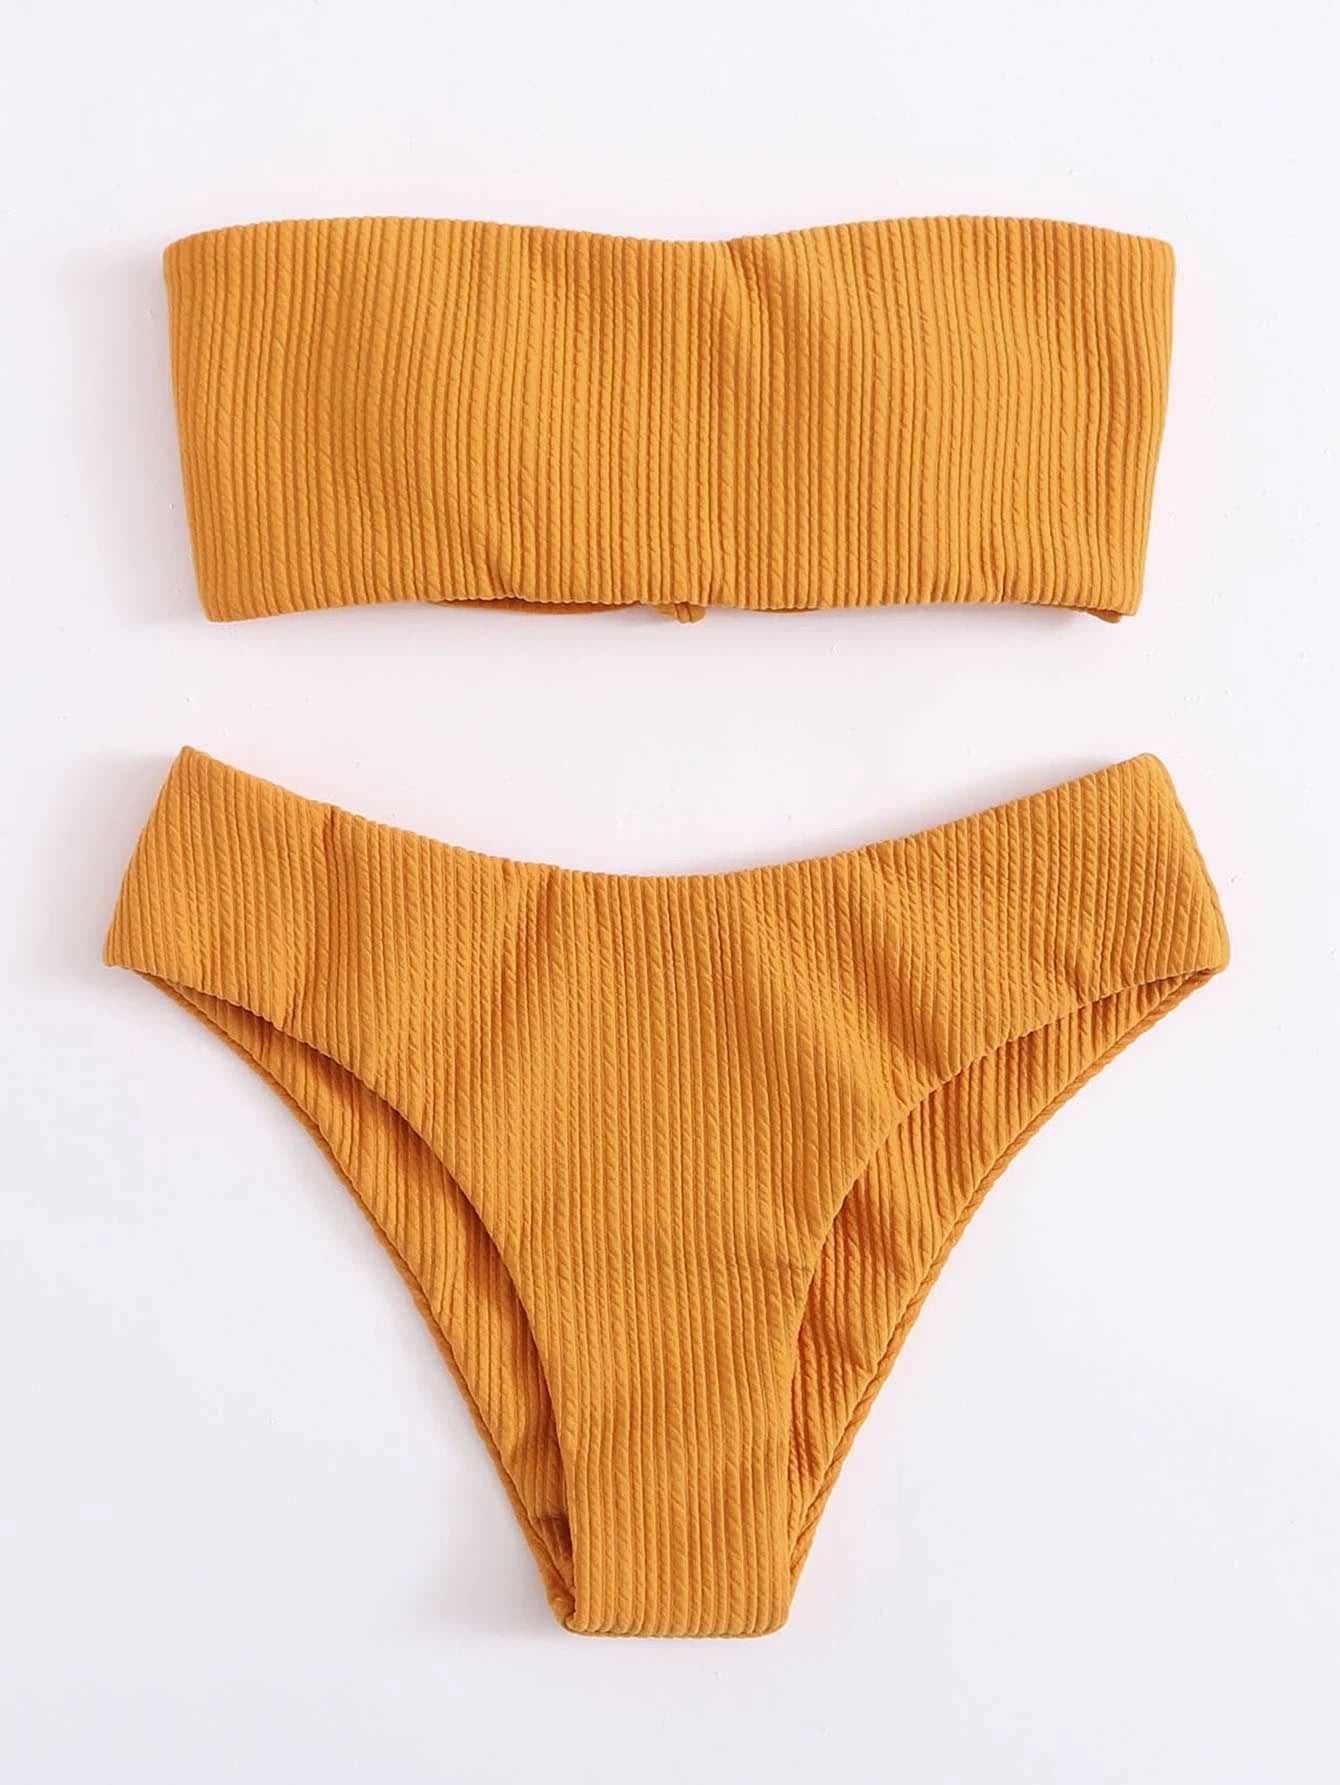 A Beachy Cover Ups Beachy Bandeau Bikini Solid Striped Texture set.